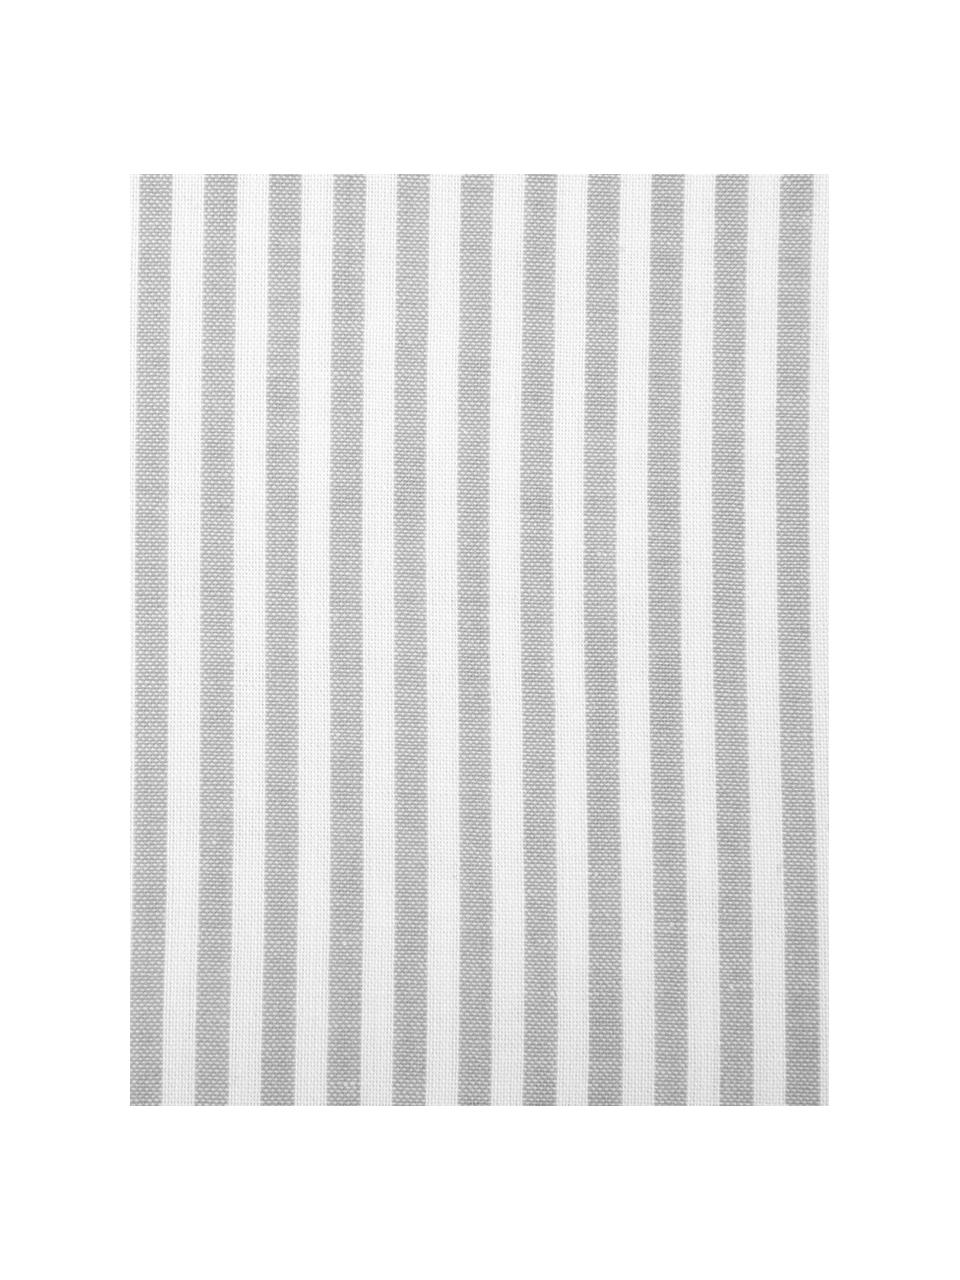 Baumwoll-Bettwäsche Ellie in Weiß/Grau, fein gestreift, Webart: Renforcé Fadendichte 118 , Grau & Weiß, gestreift, 135 x 200 cm + 1 Kissen 80 x 80 cm